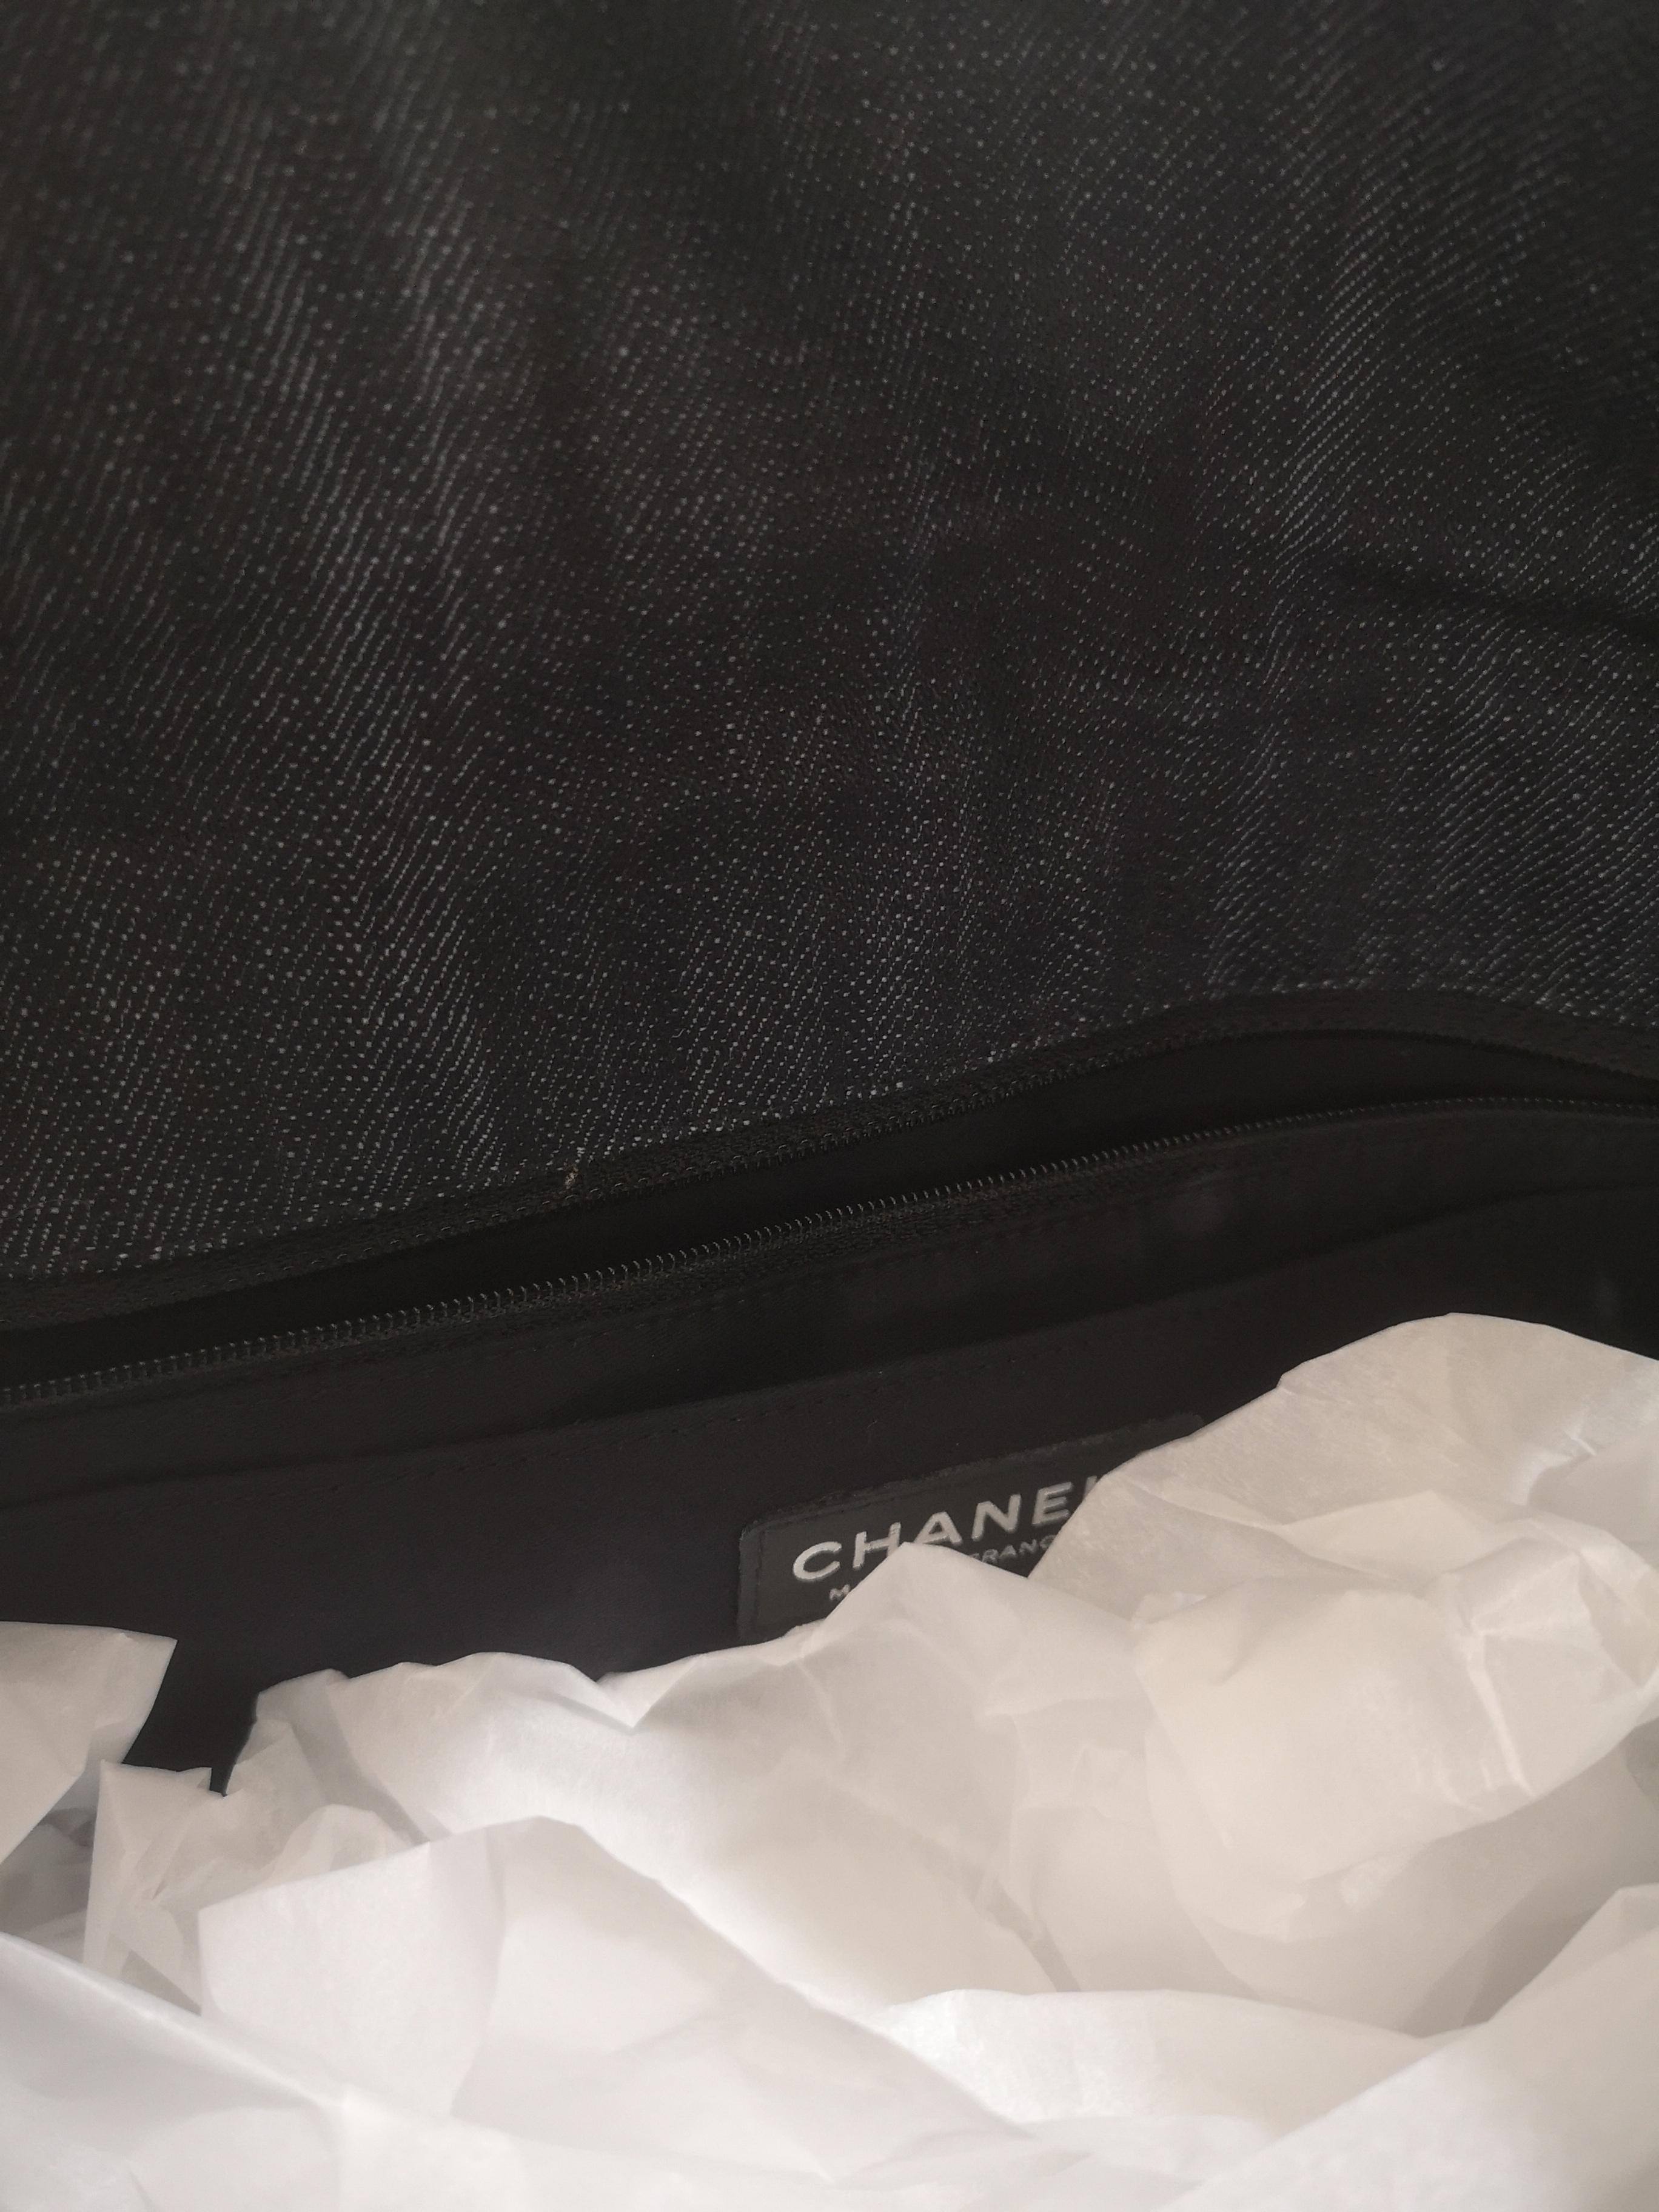 2011 Chanel Jumbo Patchwork shoulder bag 1